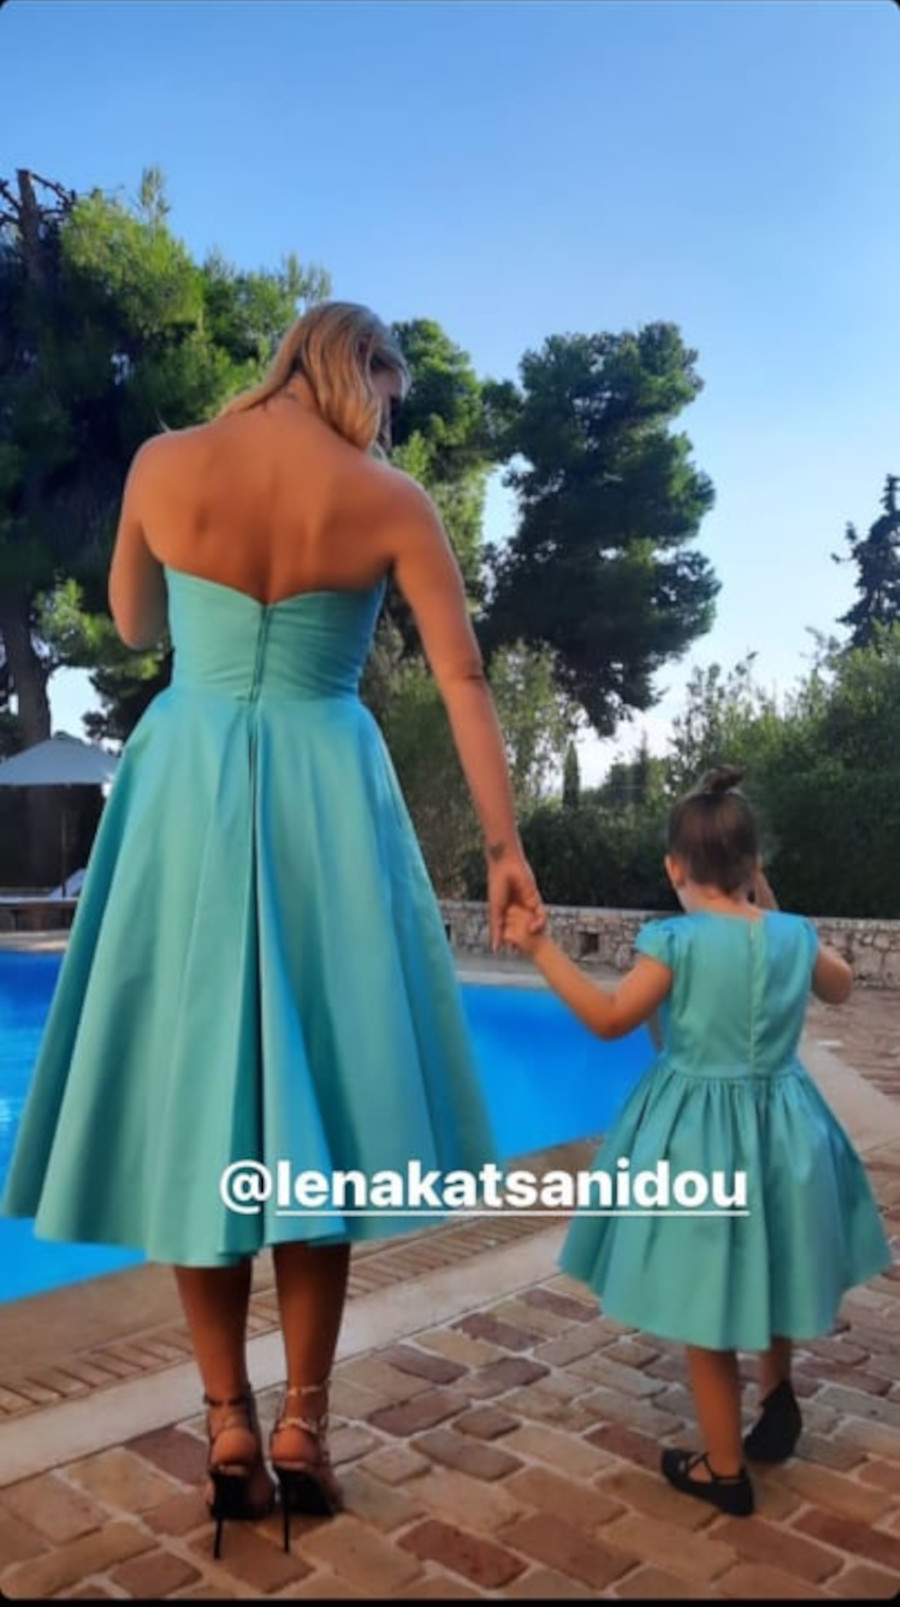 Μικρογραφία της μαμάς της: Η Ελεονώρα Μελέτη και η κόρη της με ασορτί φόρεμα! (εικόνες)